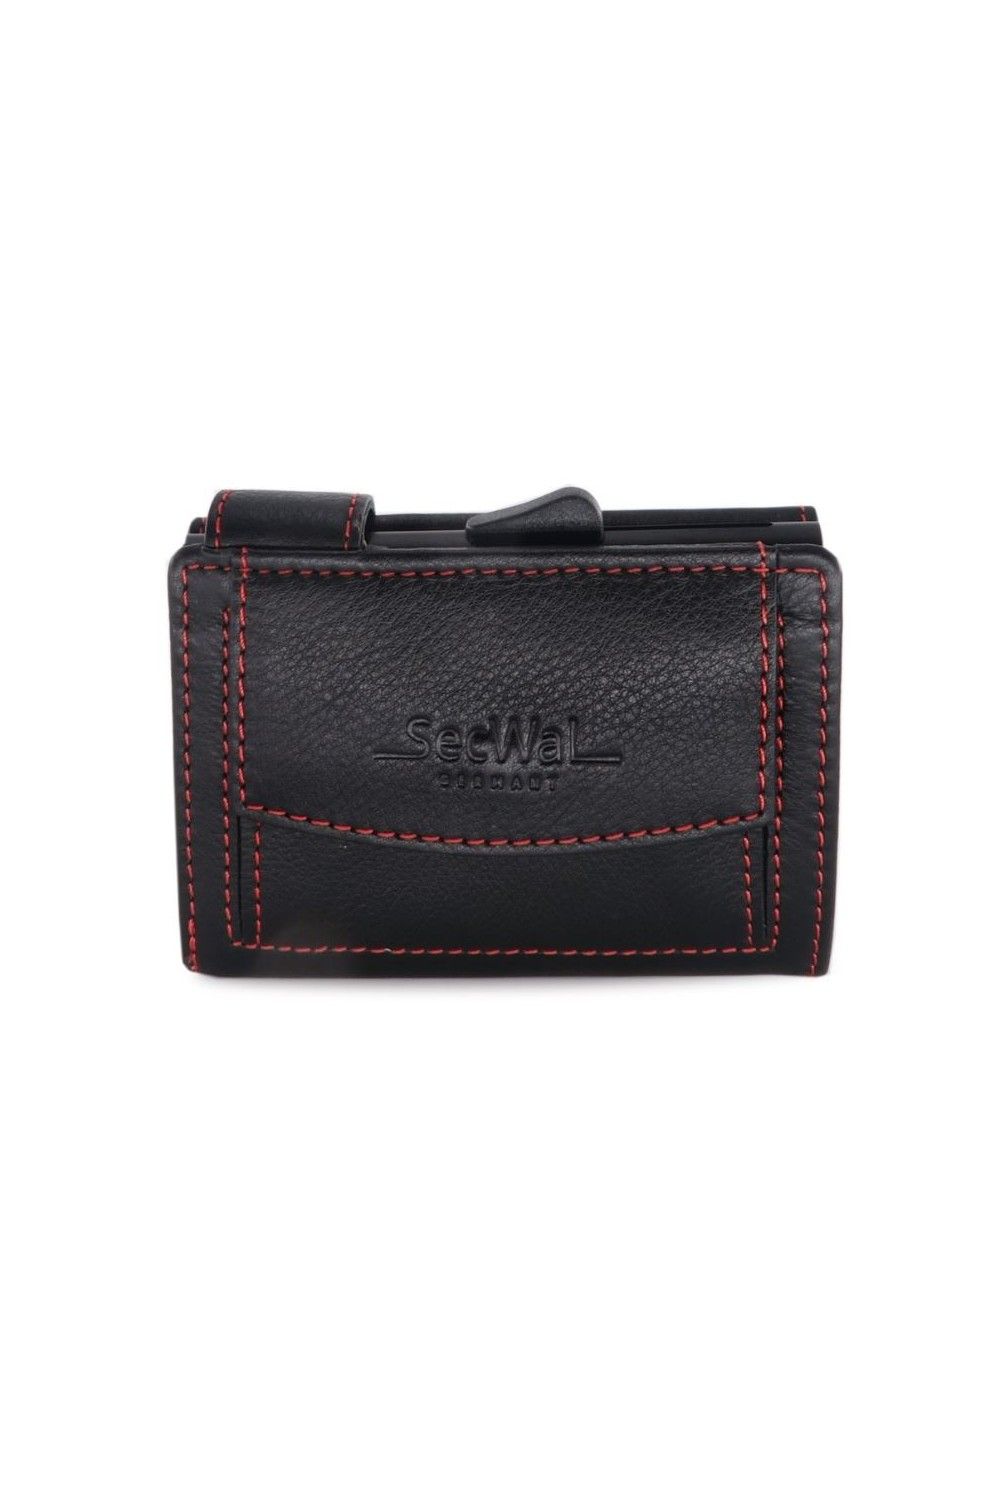 Porte-cartes SecWal DK Leather noir-rouge